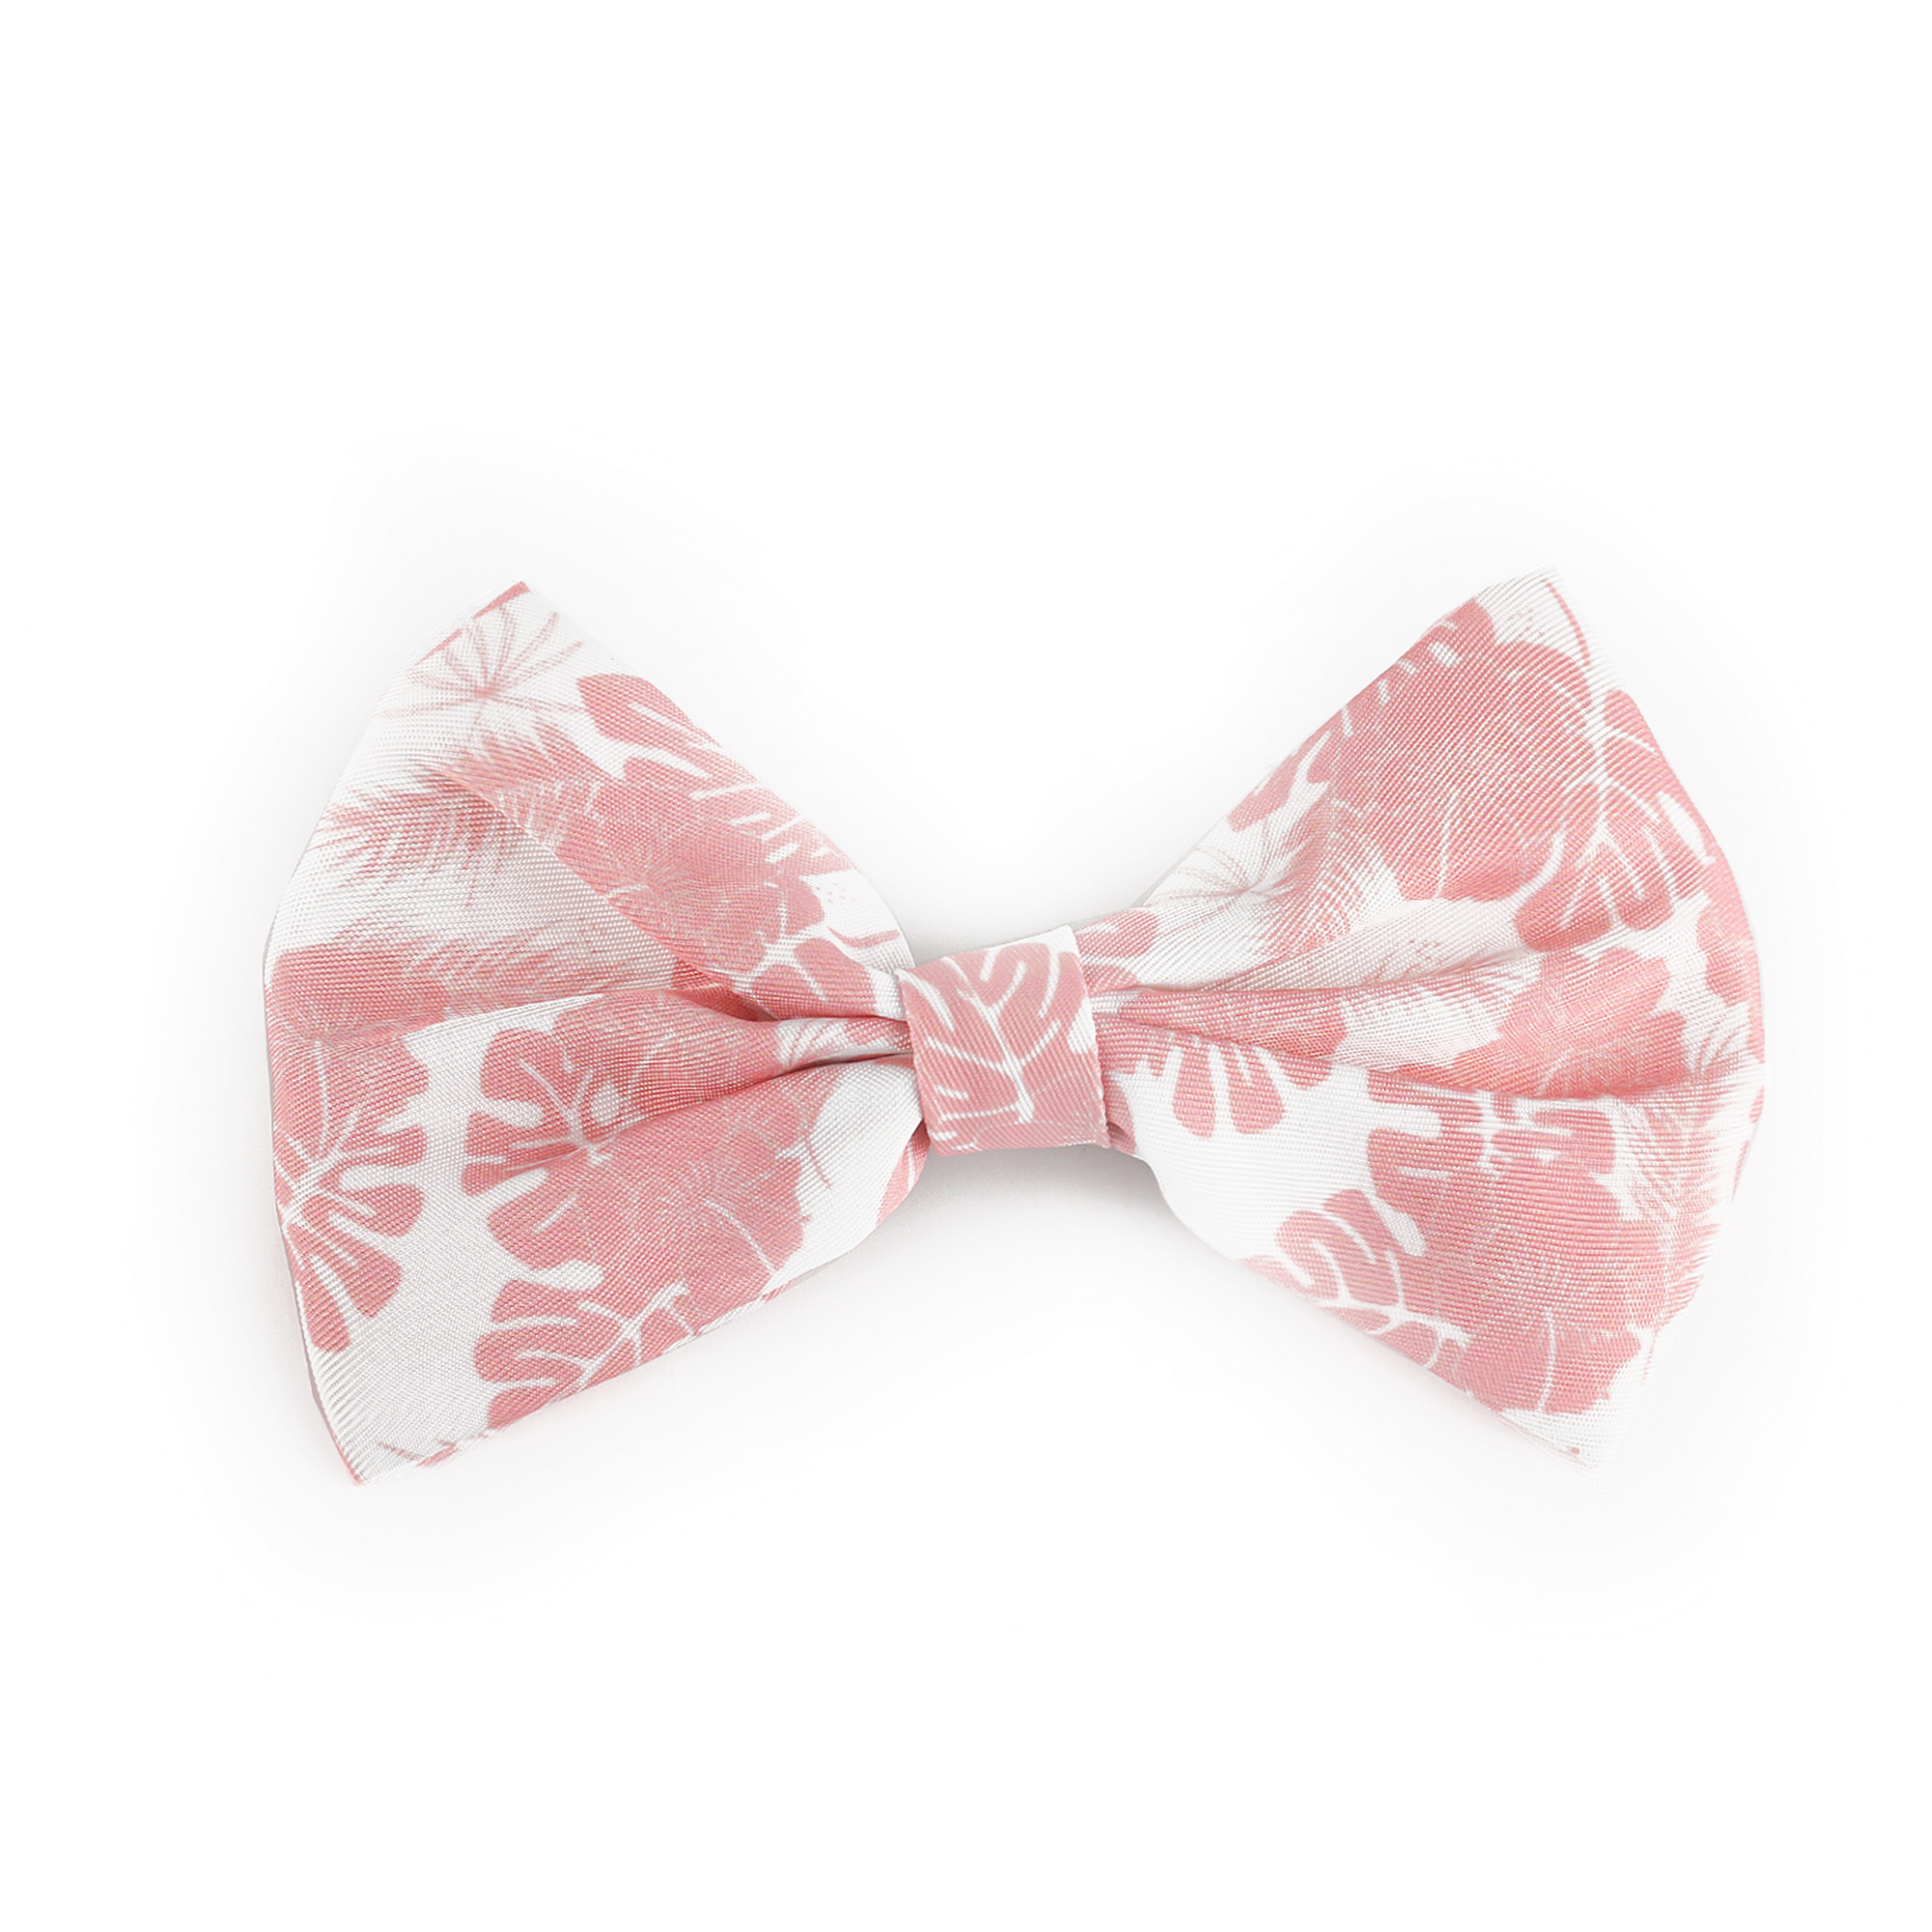 pink and white dog bow tie - Von Hound and Friends